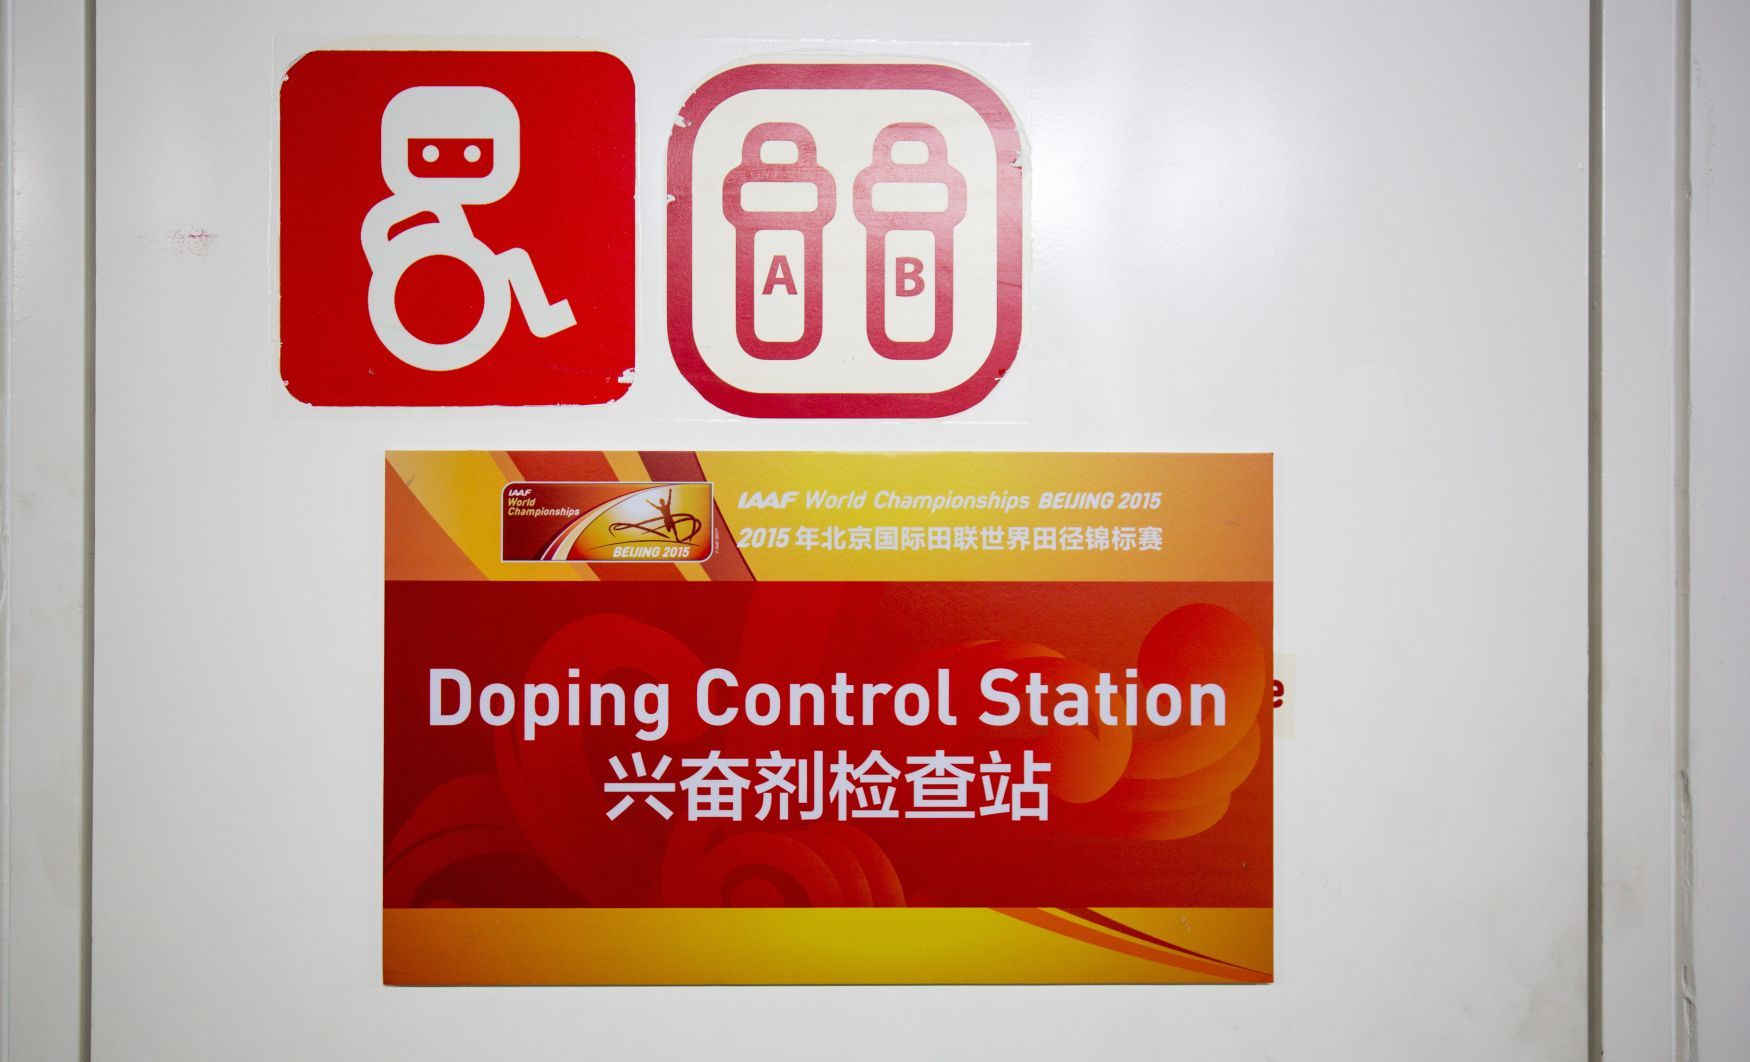 MS v atletice 2015: antidopingová kontrola